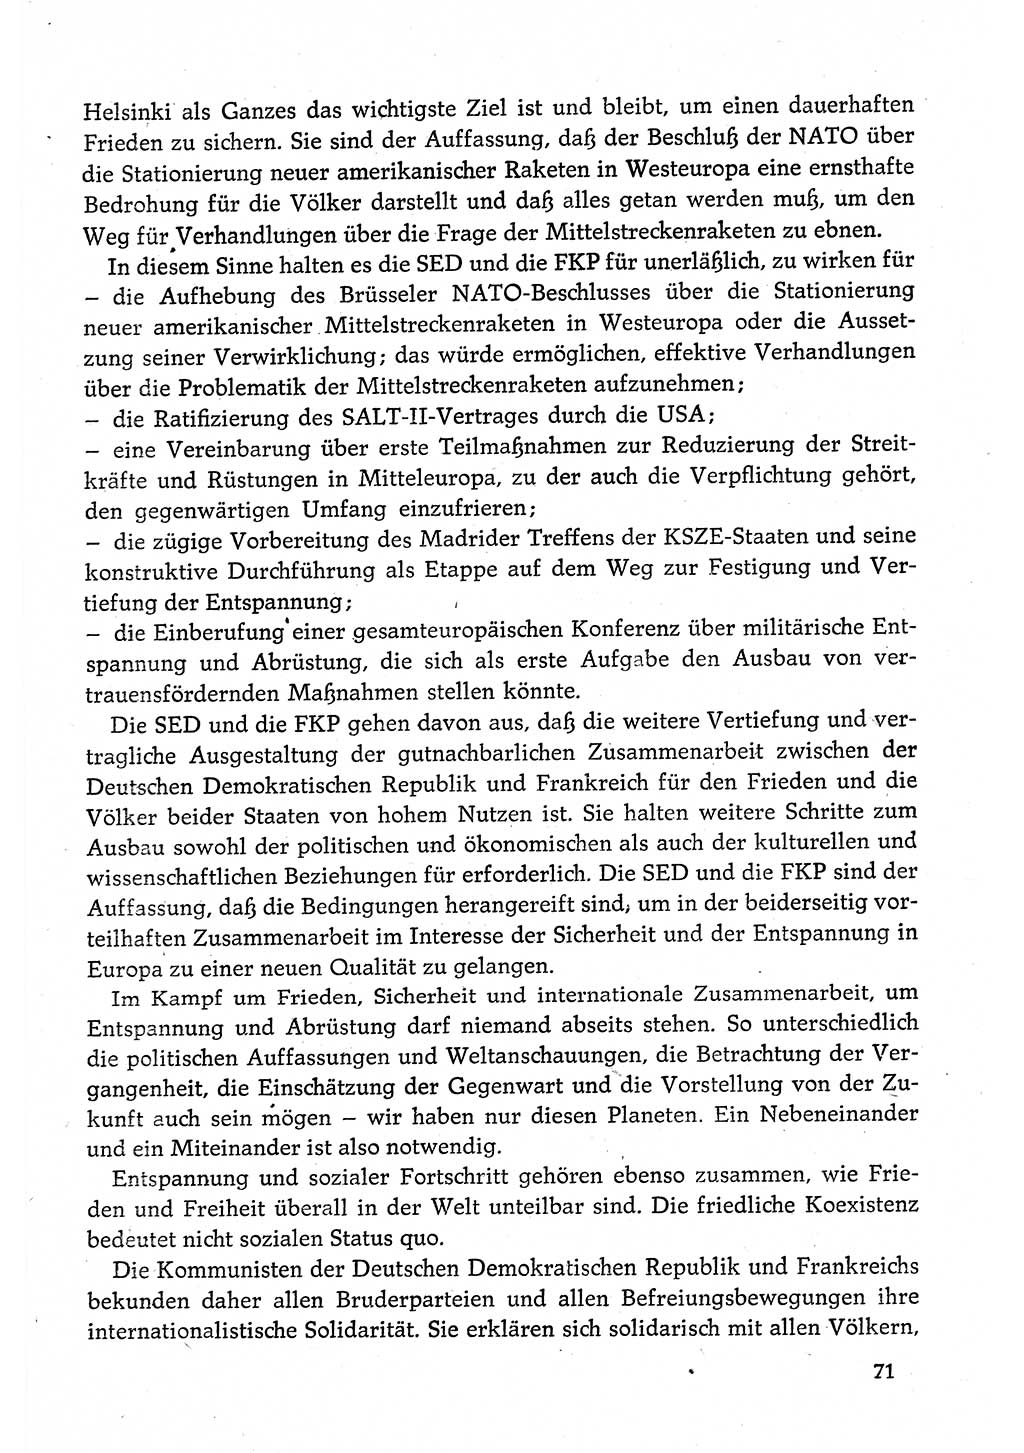 Dokumente der Sozialistischen Einheitspartei Deutschlands (SED) [Deutsche Demokratische Republik (DDR)] 1980-1981, Seite 71 (Dok. SED DDR 1980-1981, S. 71)